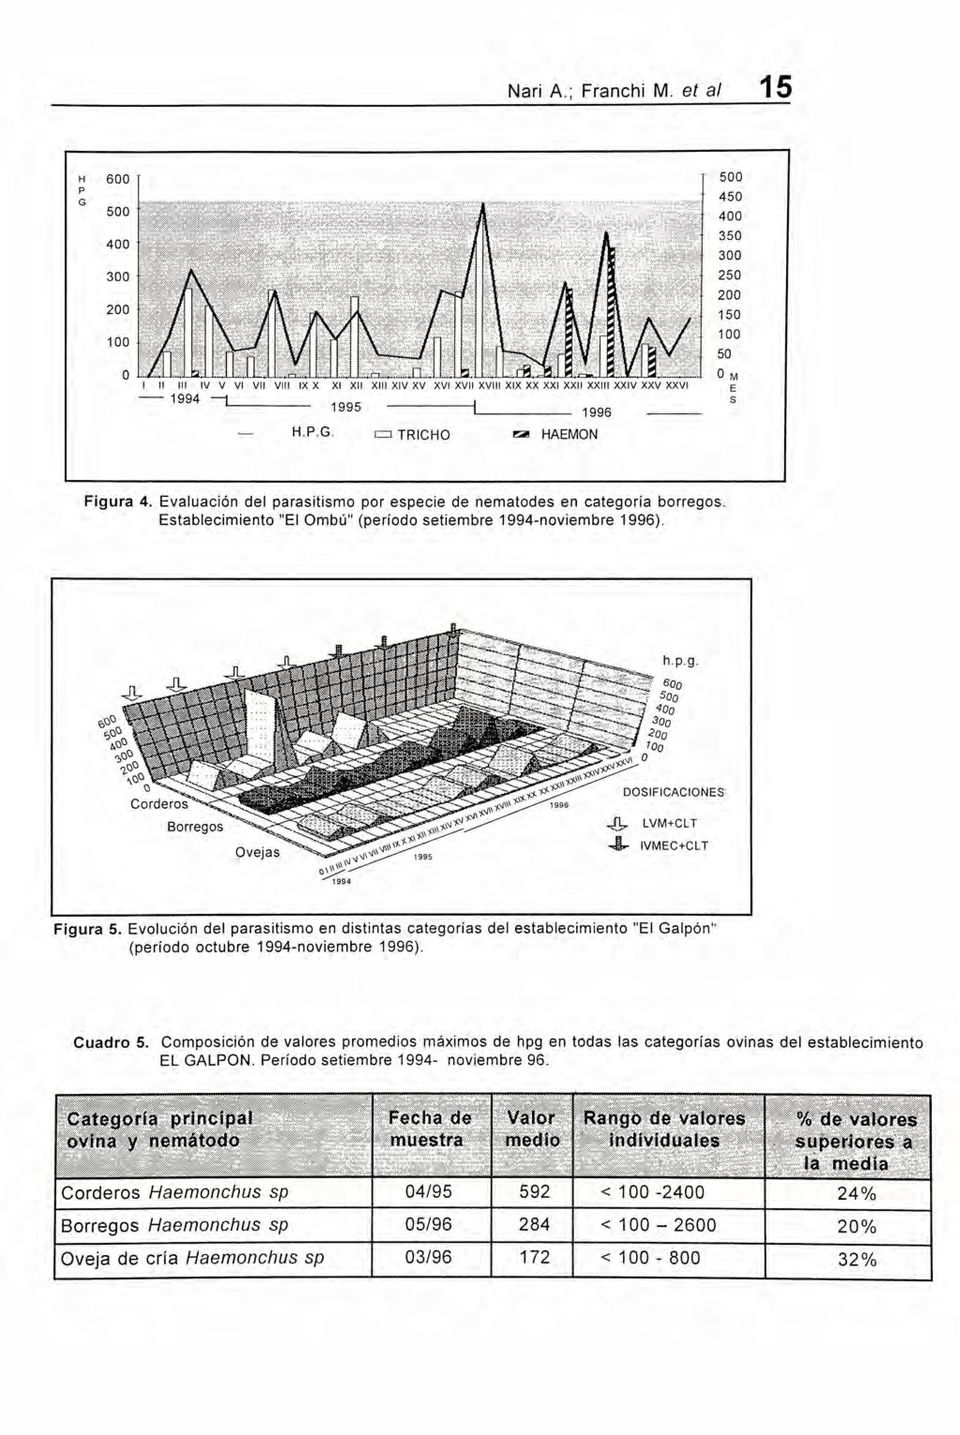 Evolución del parasitismo en distintas categorías del establecimiento "El Galpón" (período octubre 1994-noviembre 1996). Cuadro 5.